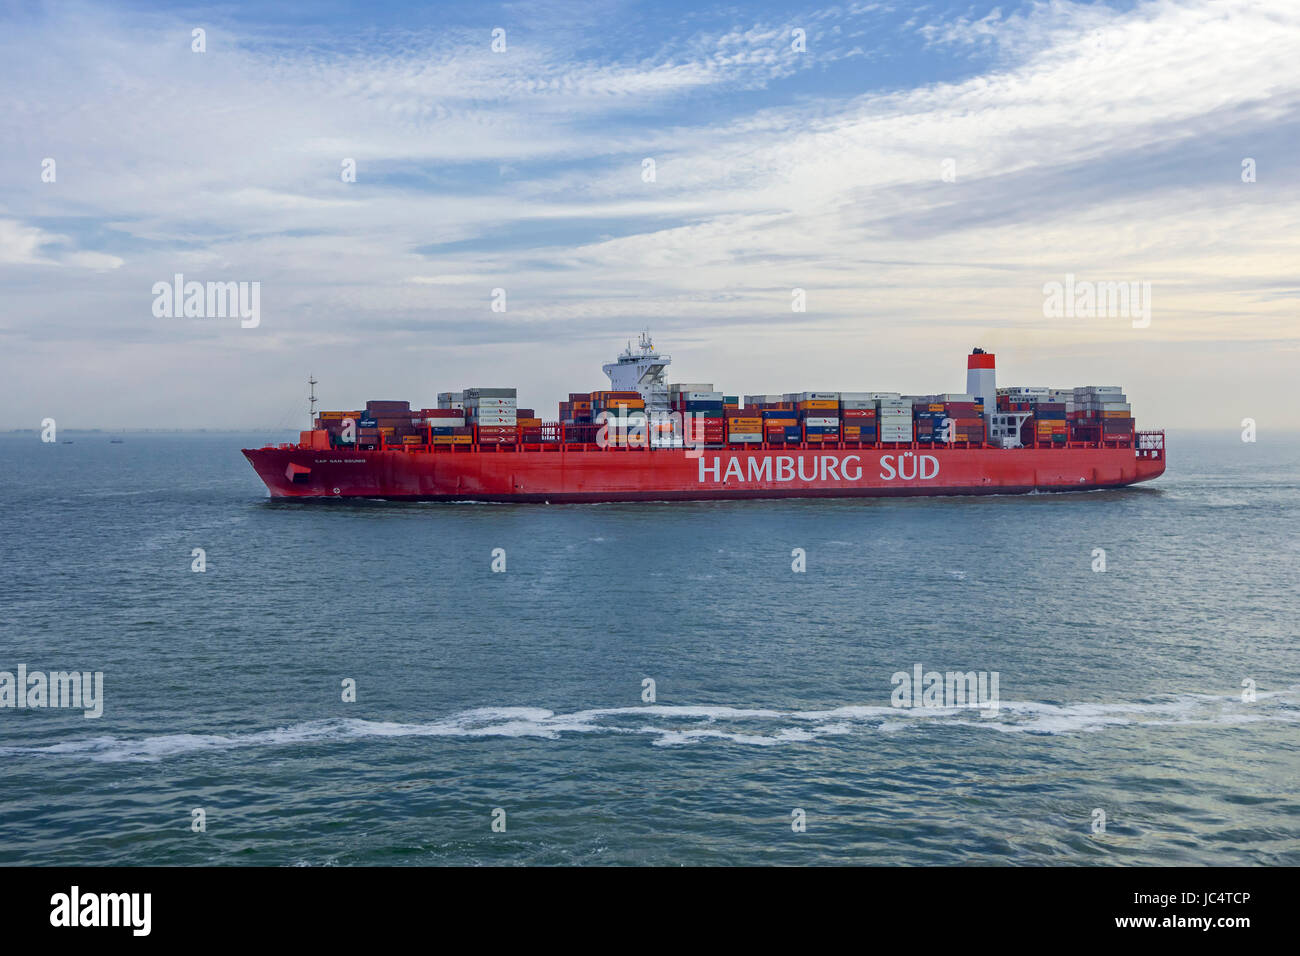 Buque portacontenedores Cap San Sounio alemana de la naviera Hamburg Süd Foto de stock